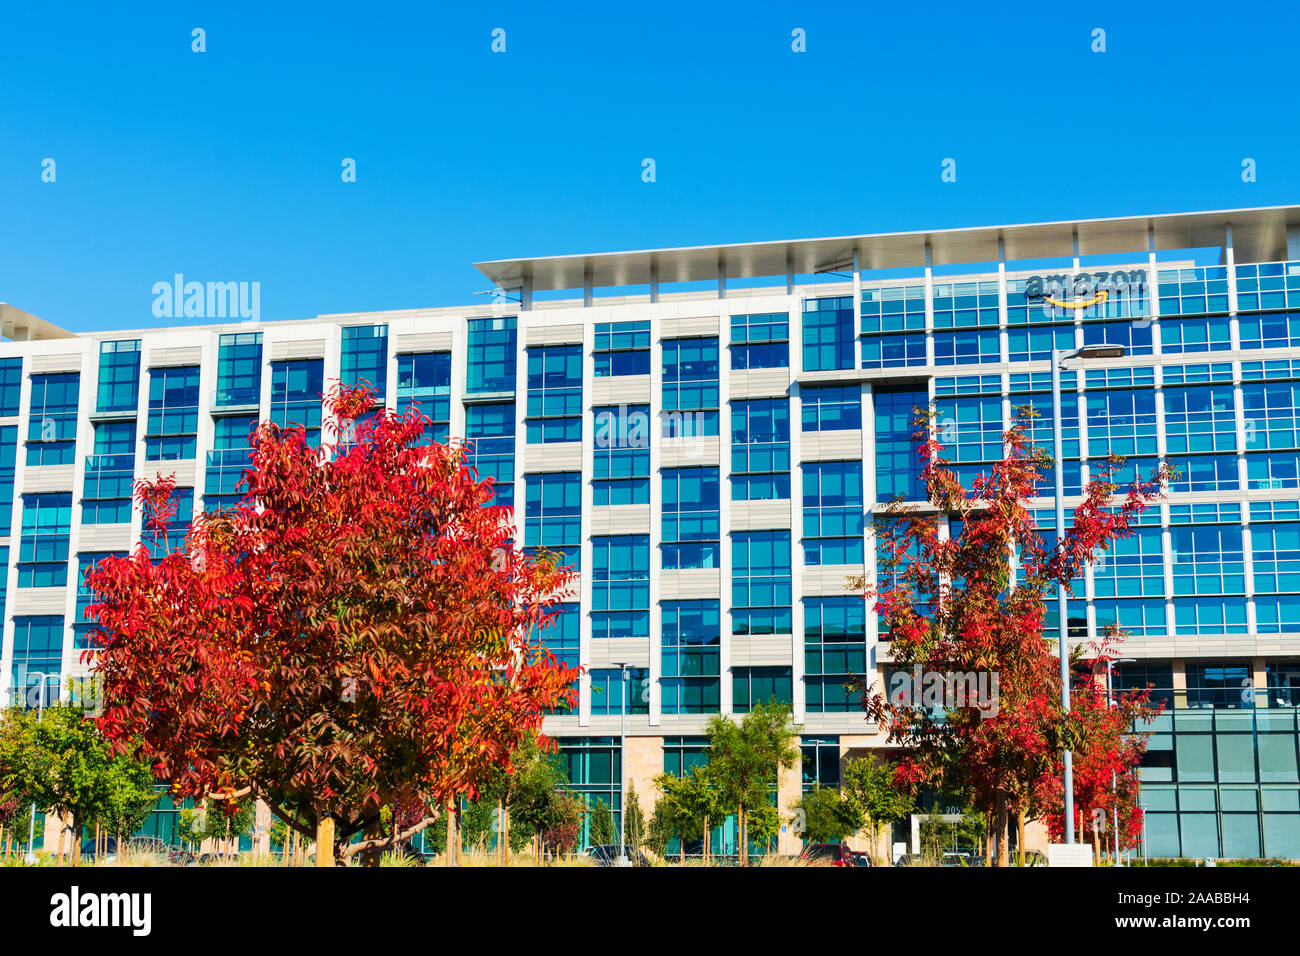 Amazon.com modern building facade in Silicon Valley campus - Sunnyvale, California, USA - 2019 Stock Photo